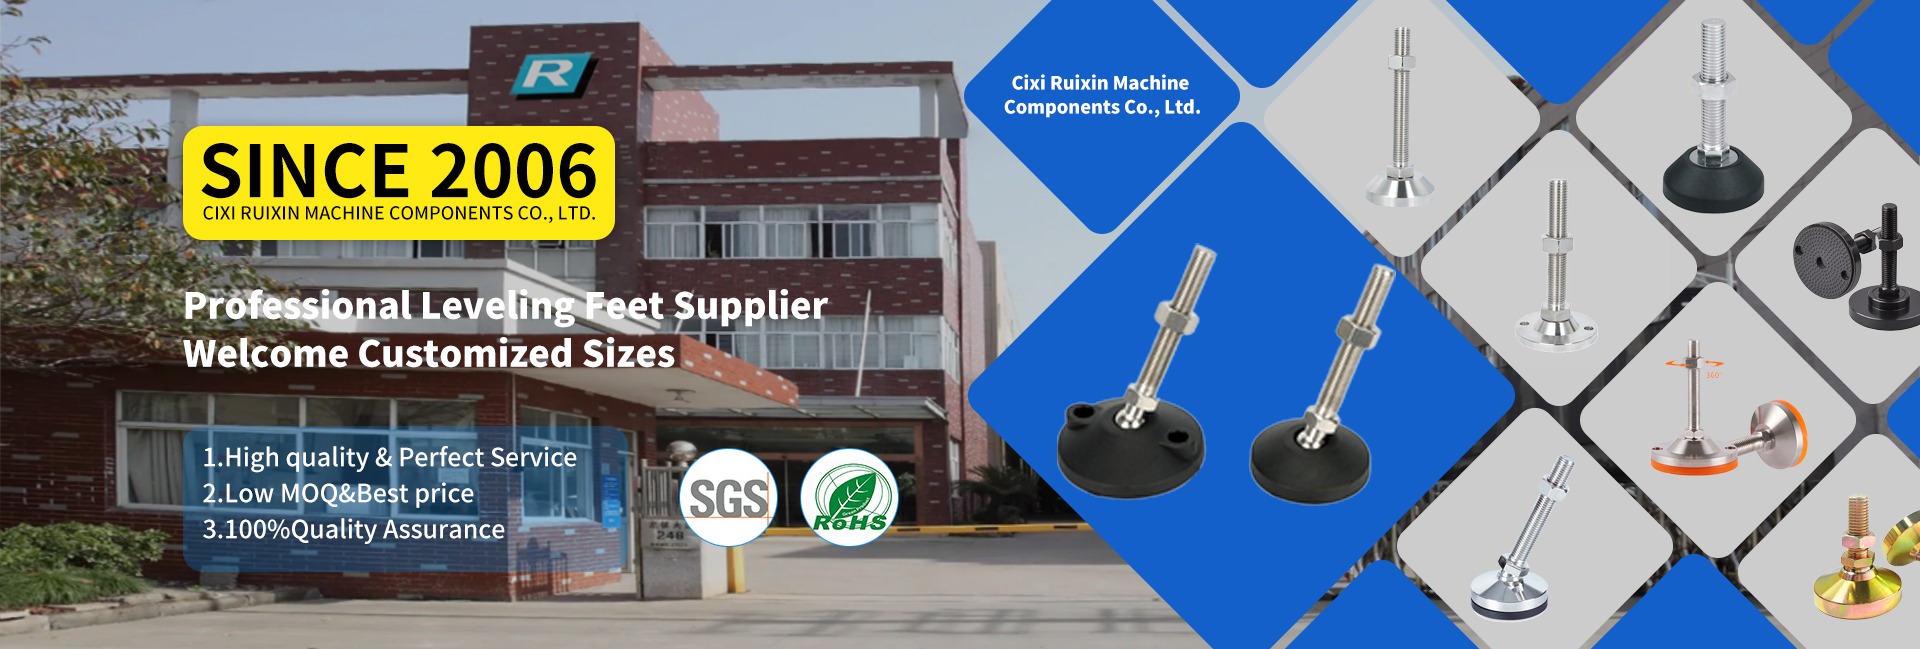 Cixi Ruixin Machine Components Co., Ltd